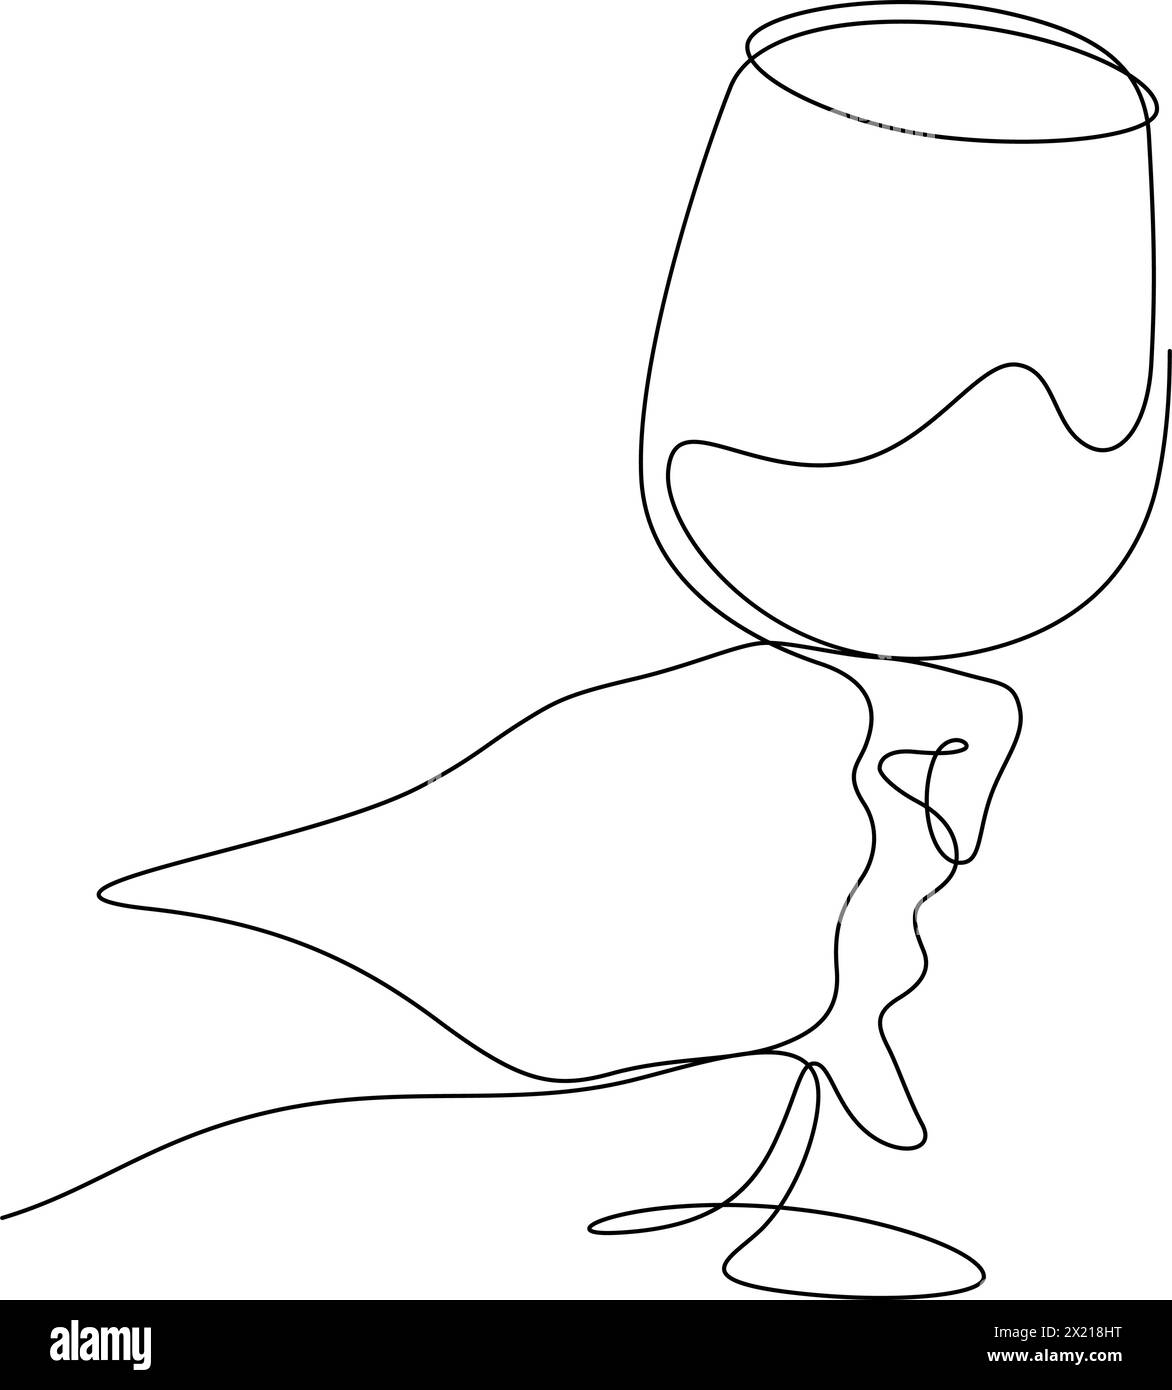 Weinglas feierlicher Toast Beifall Hand gezeichnet eine Linie kontinuierliche Vektor-Illustration Stock Vektor